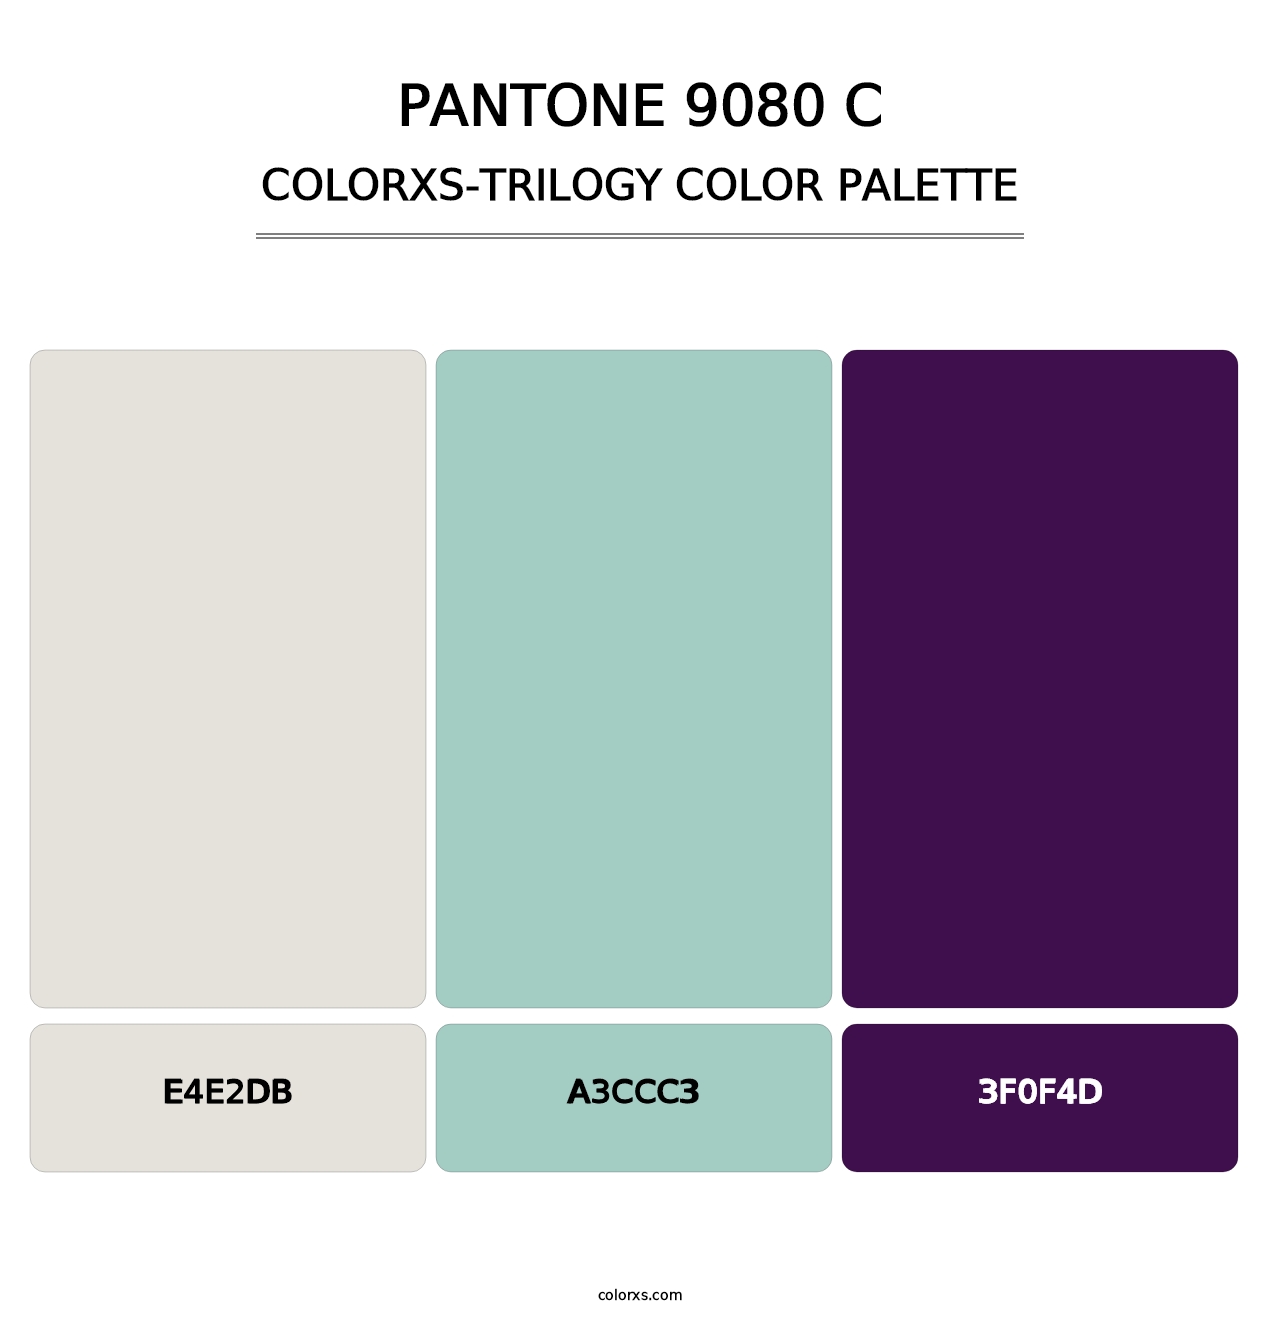 PANTONE 9080 C - Colorxs Trilogy Palette